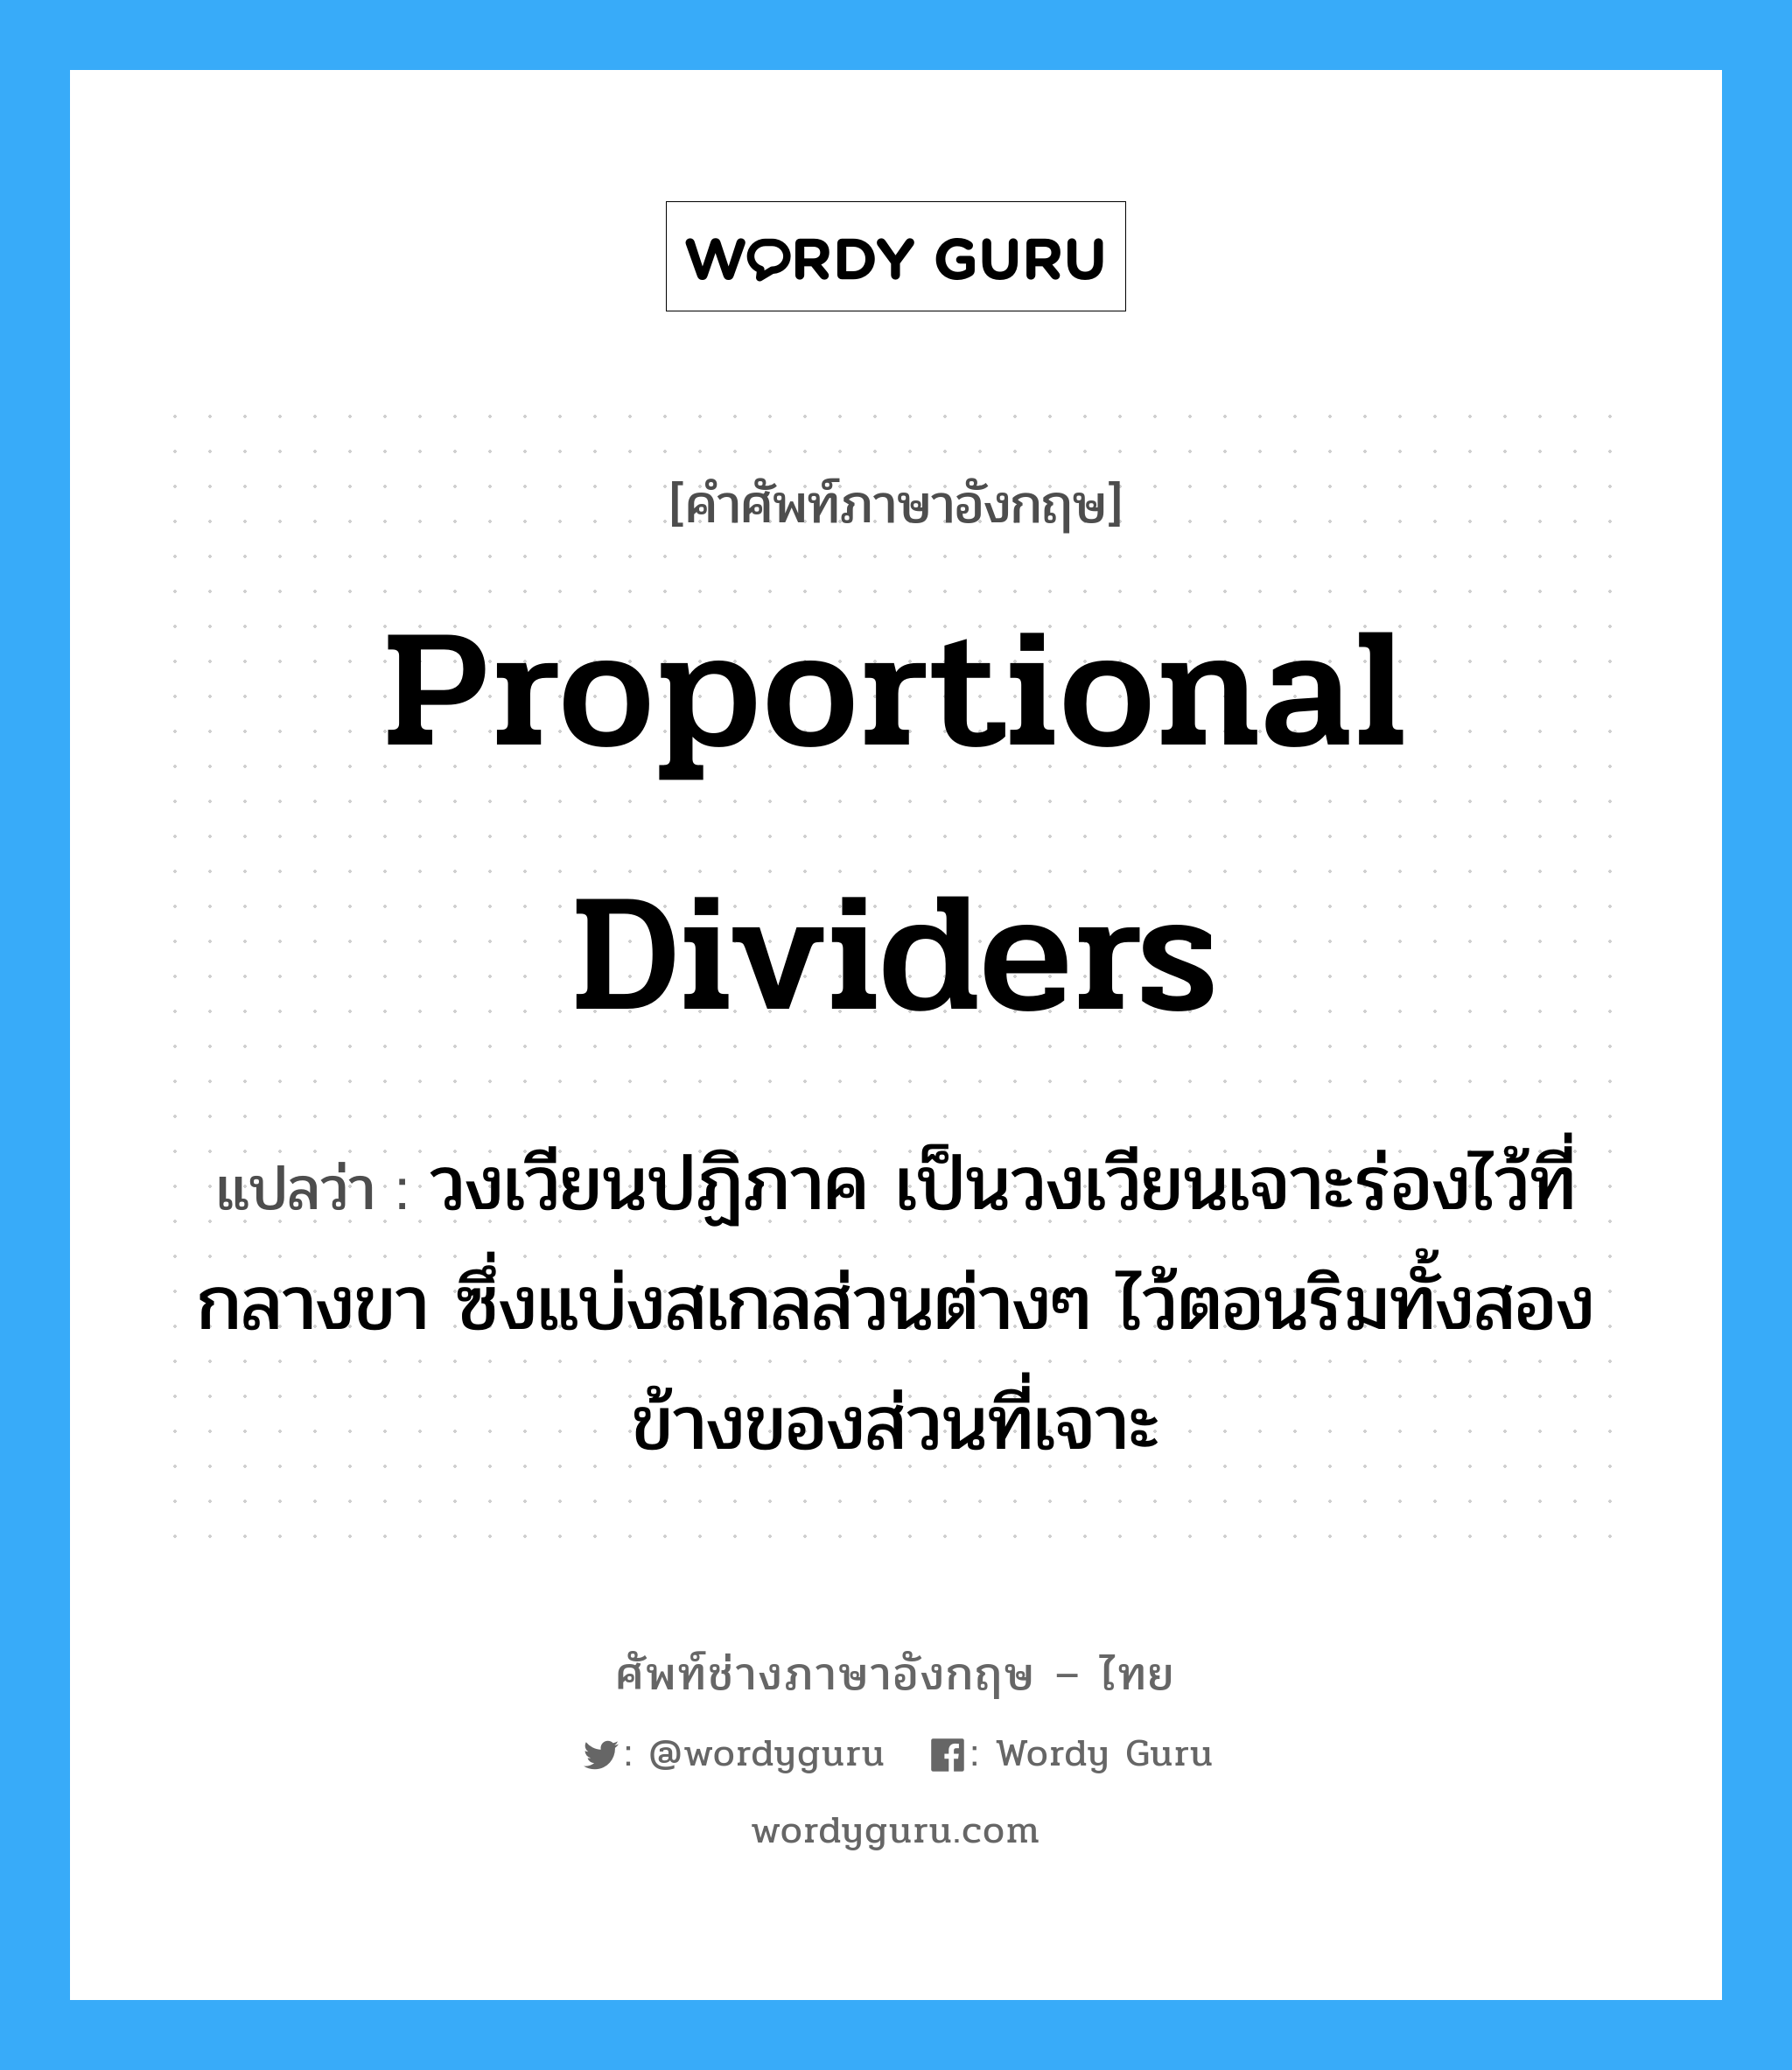 proportional dividers แปลว่า?, คำศัพท์ช่างภาษาอังกฤษ - ไทย proportional dividers คำศัพท์ภาษาอังกฤษ proportional dividers แปลว่า วงเวียนปฏิภาค เป็นวงเวียนเจาะร่องไว้ที่กลางขา ซึ่งแบ่งสเกลส่วนต่างๆ ไว้ตอนริมทั้งสองข้างของส่วนที่เจาะ